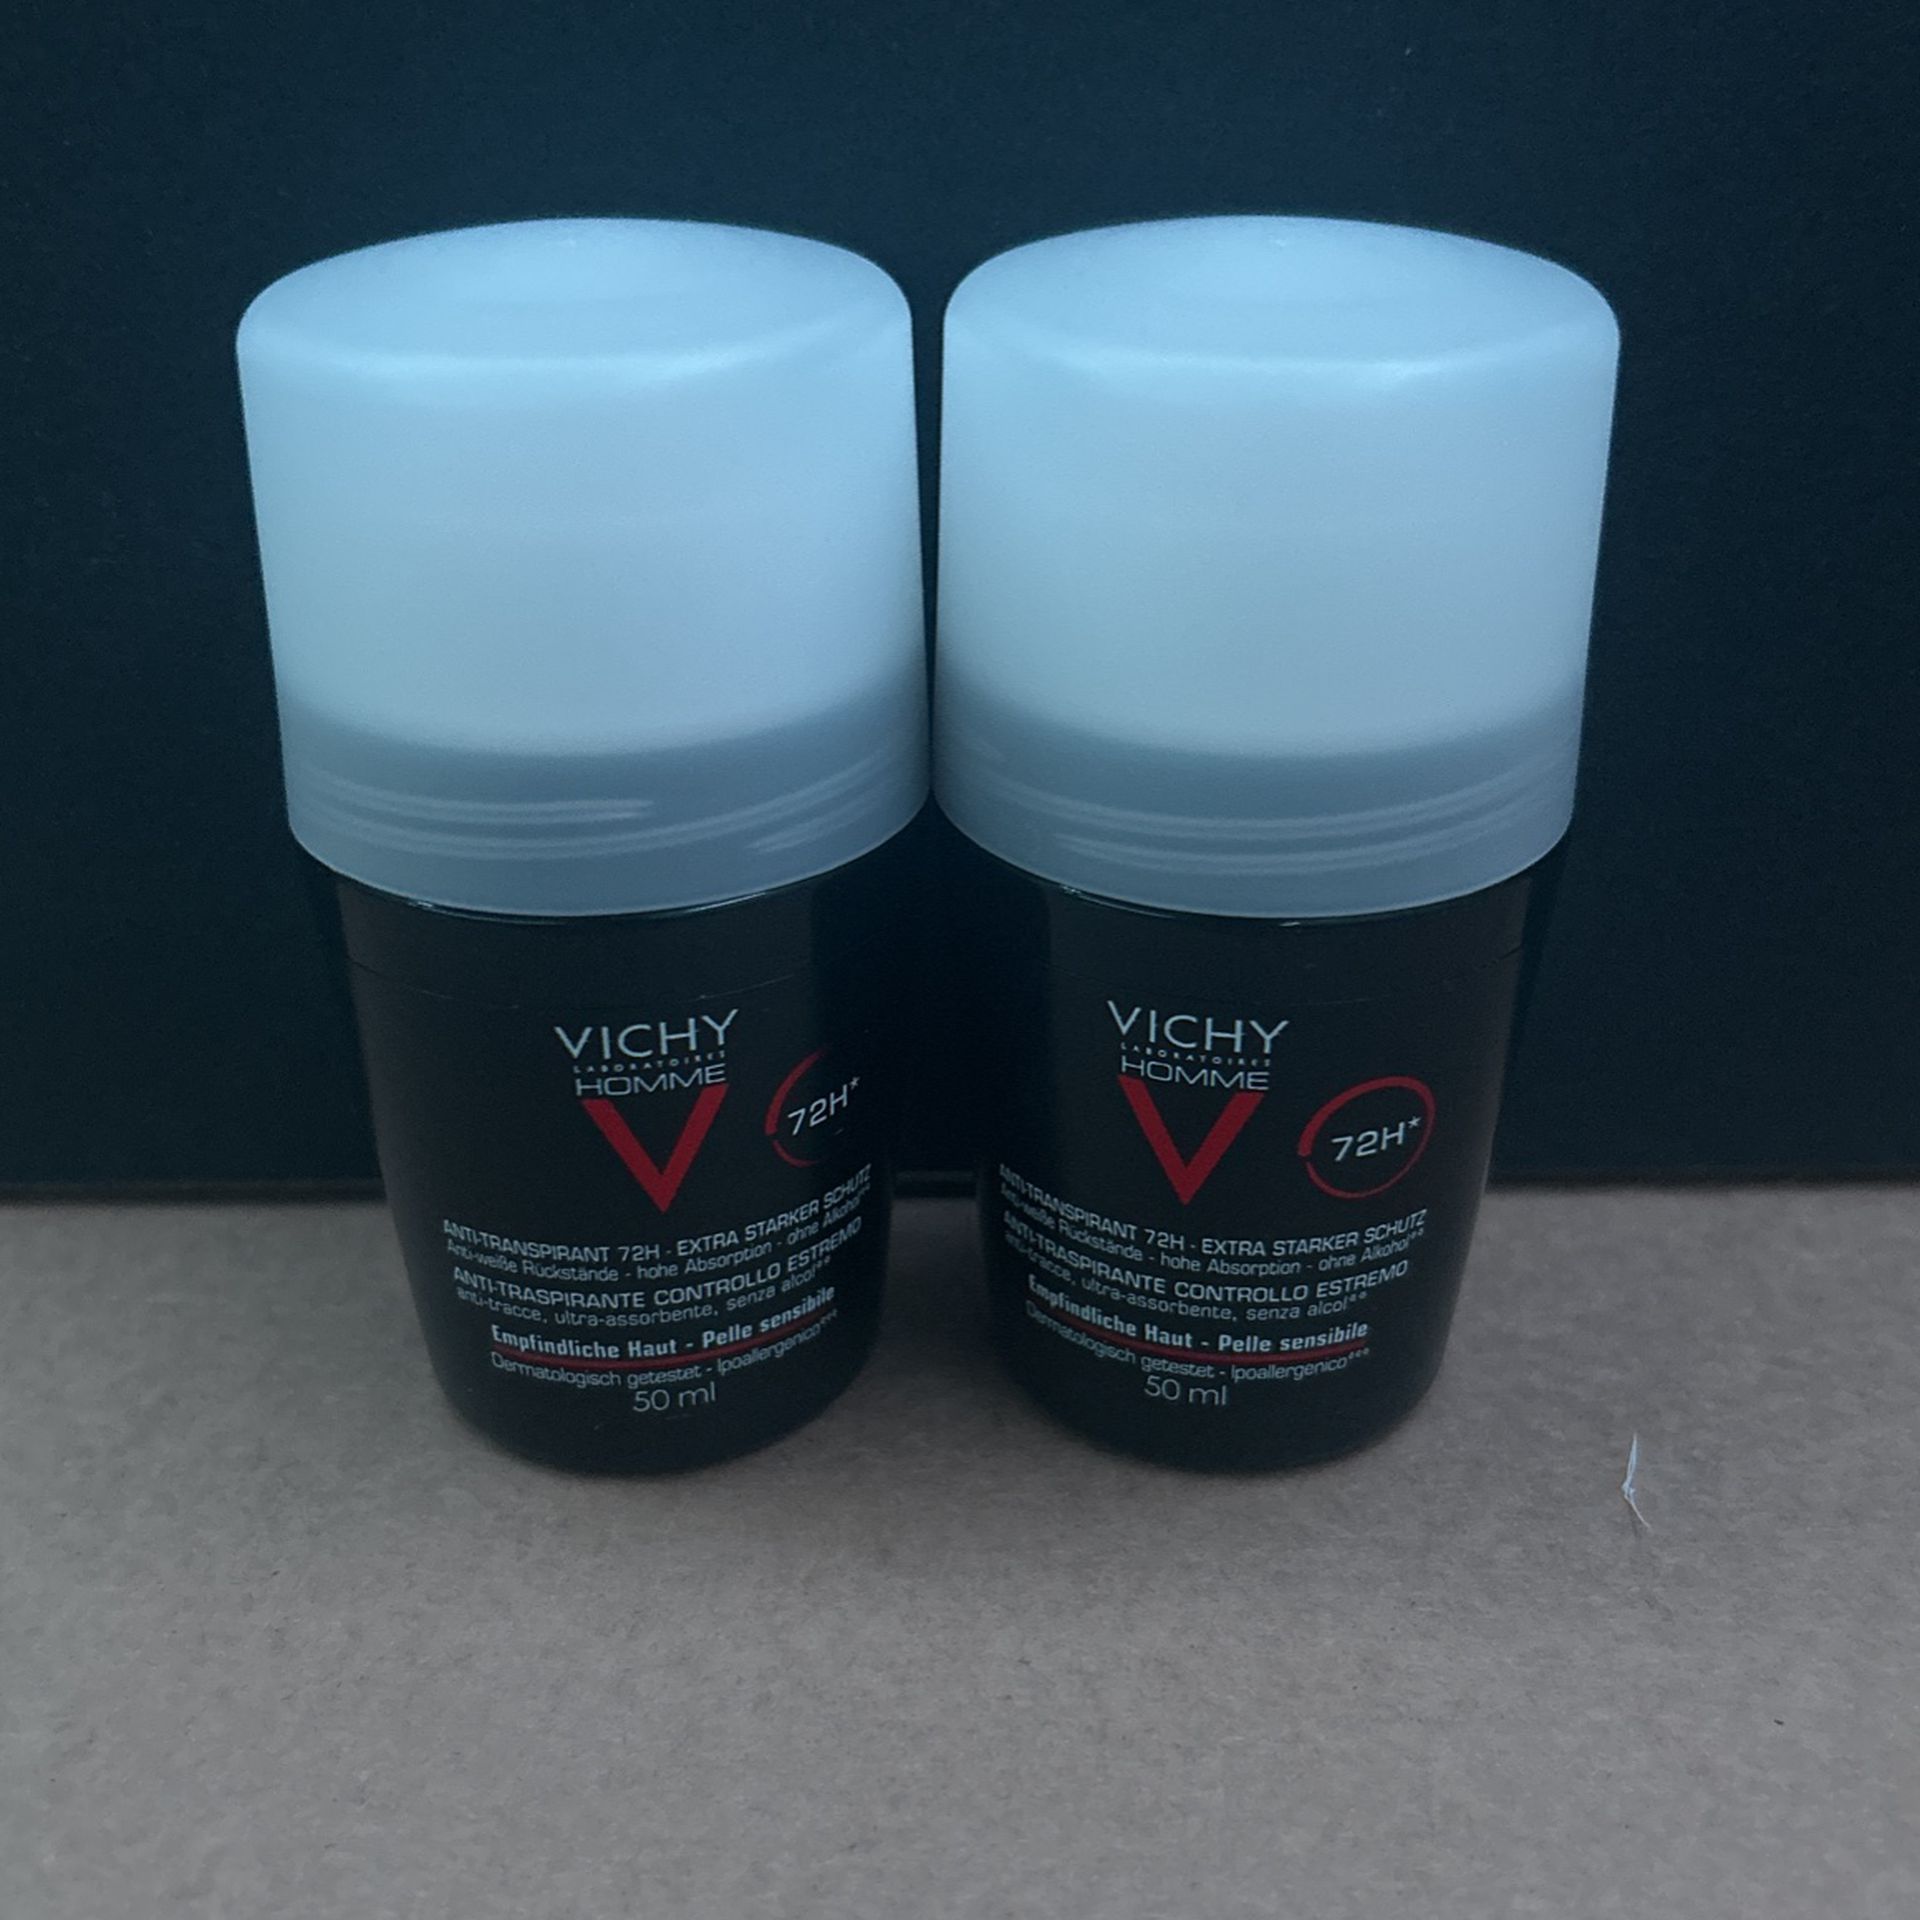 Vichy Homme Deodorant 72Hr 50ml 2 Pack